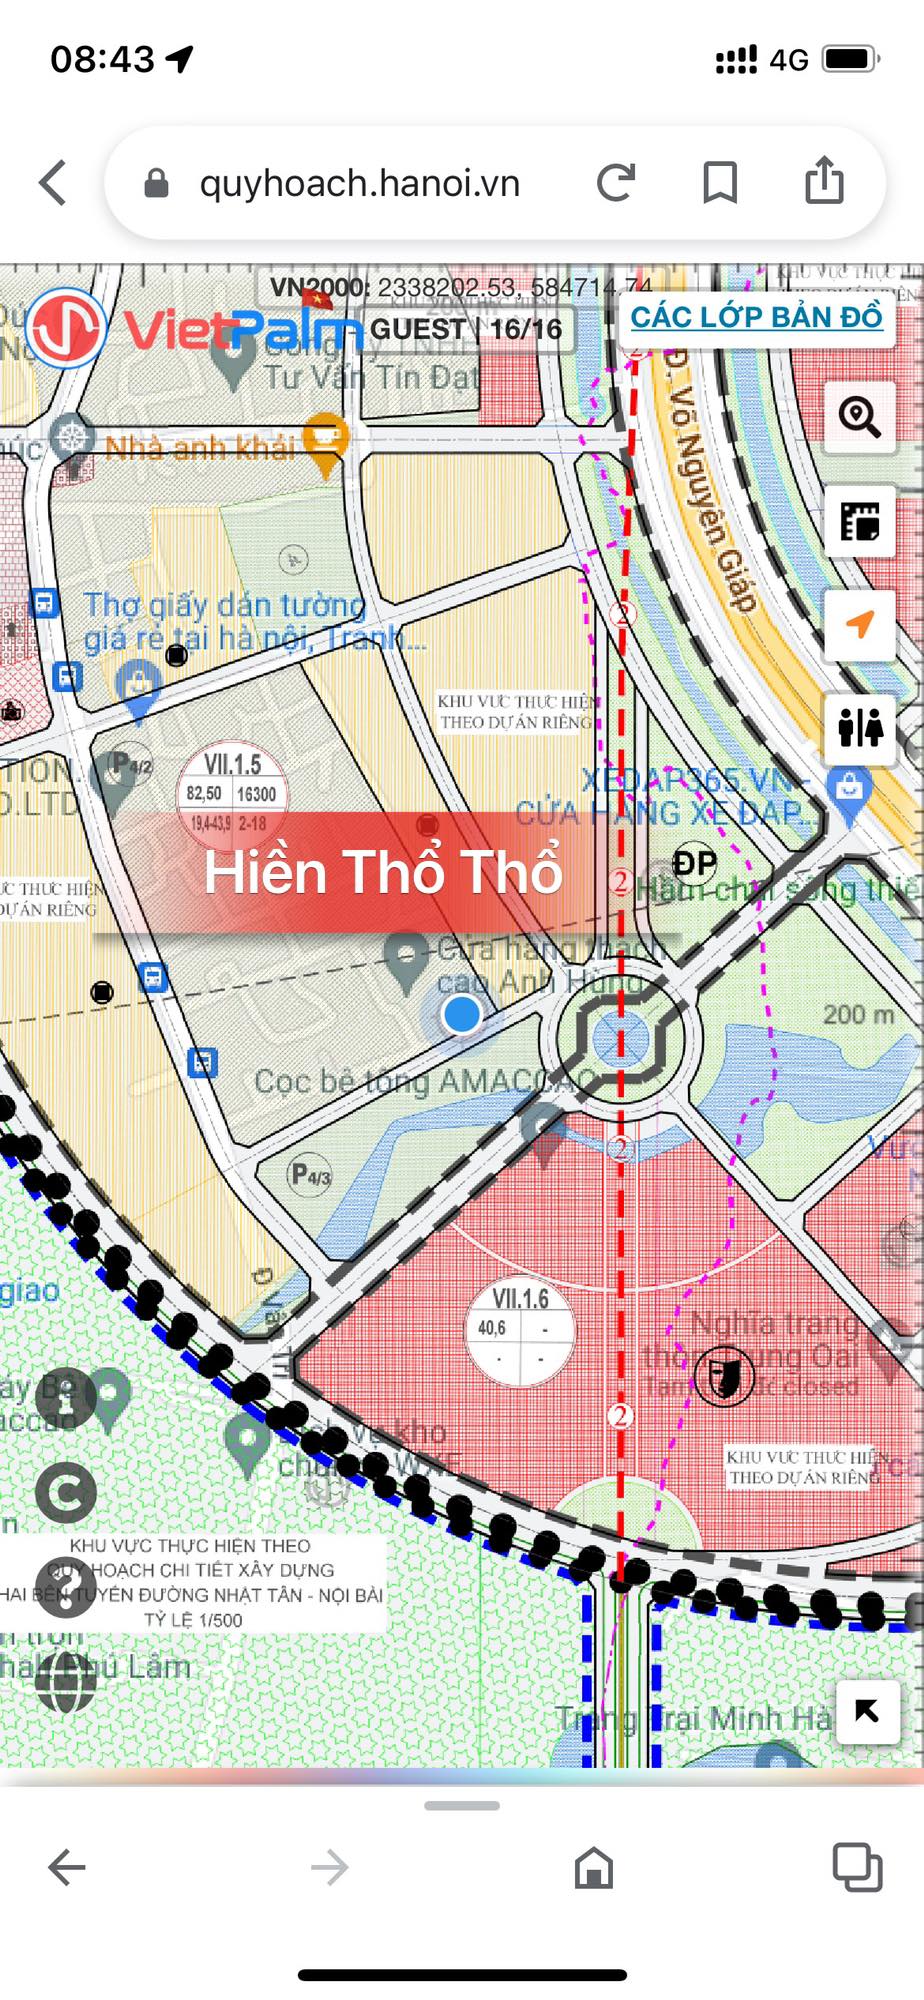 VỊ TRÍ ĐẮC ĐỊA - Lô Góc 68,5m - tại Viên Nội - Vân Nội - Đông Anh 2